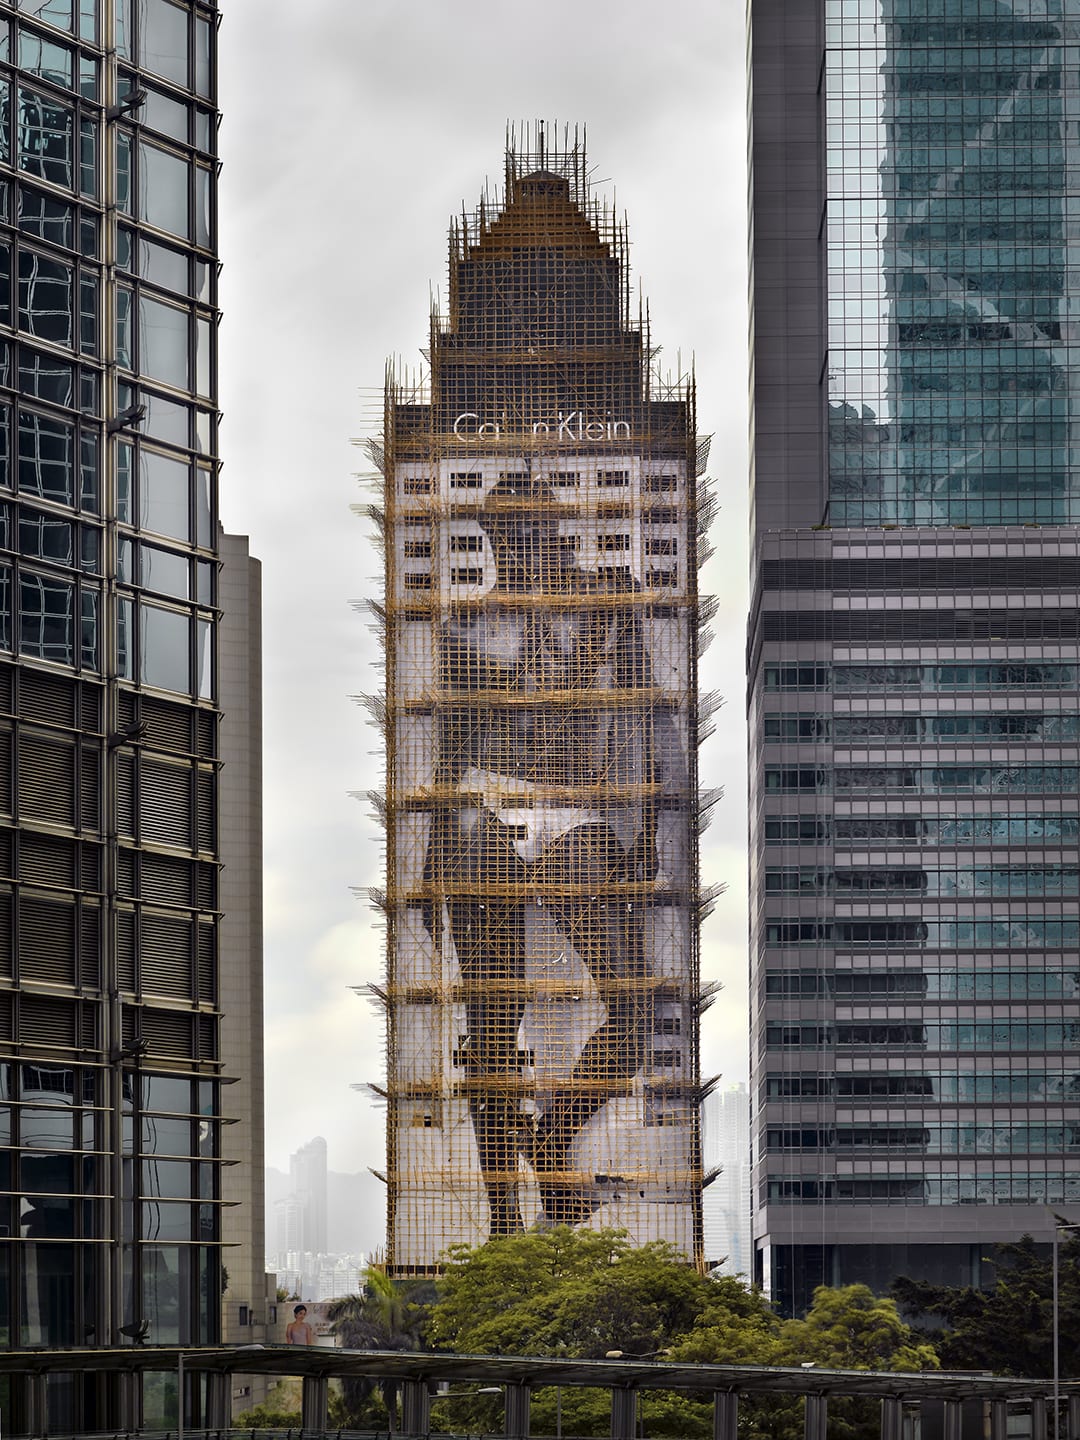 أمريكي يبرز مرحلة "الشرنقة" الساحرة لمباني هونغ كونغ..كيف ظهرت؟